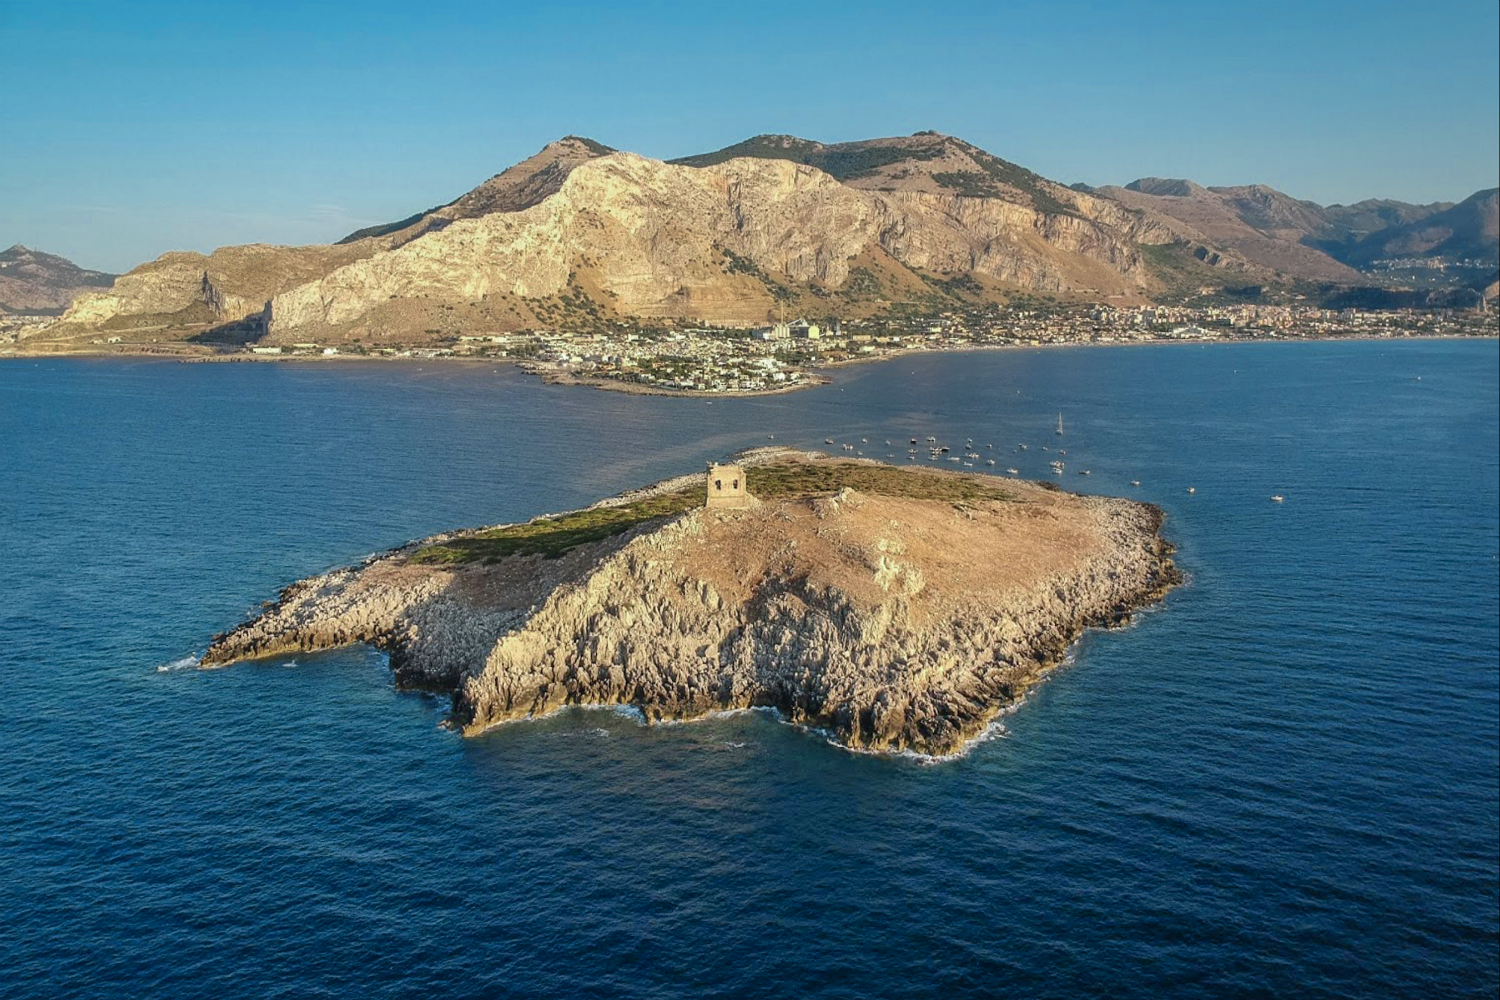 isola delle femmine italian island for sale sicilian 1